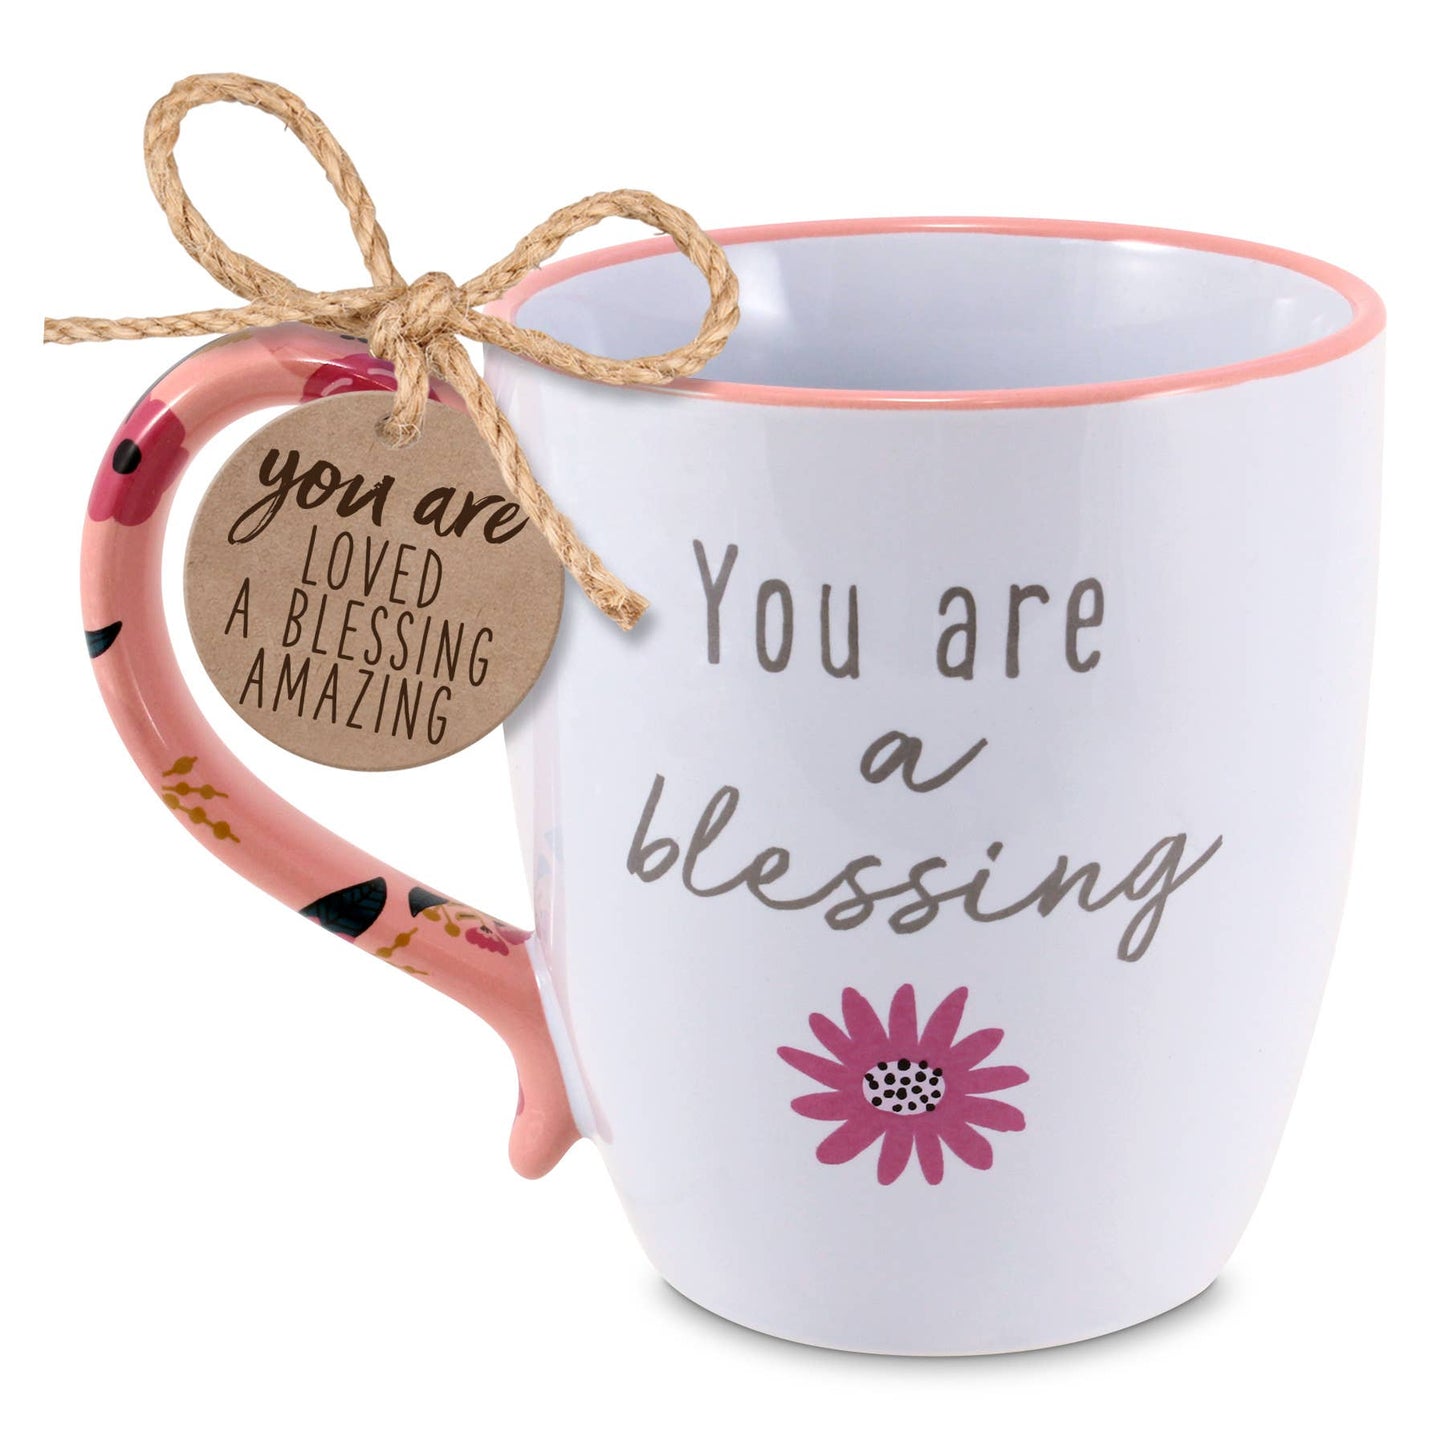 Blessings Coffee Mug